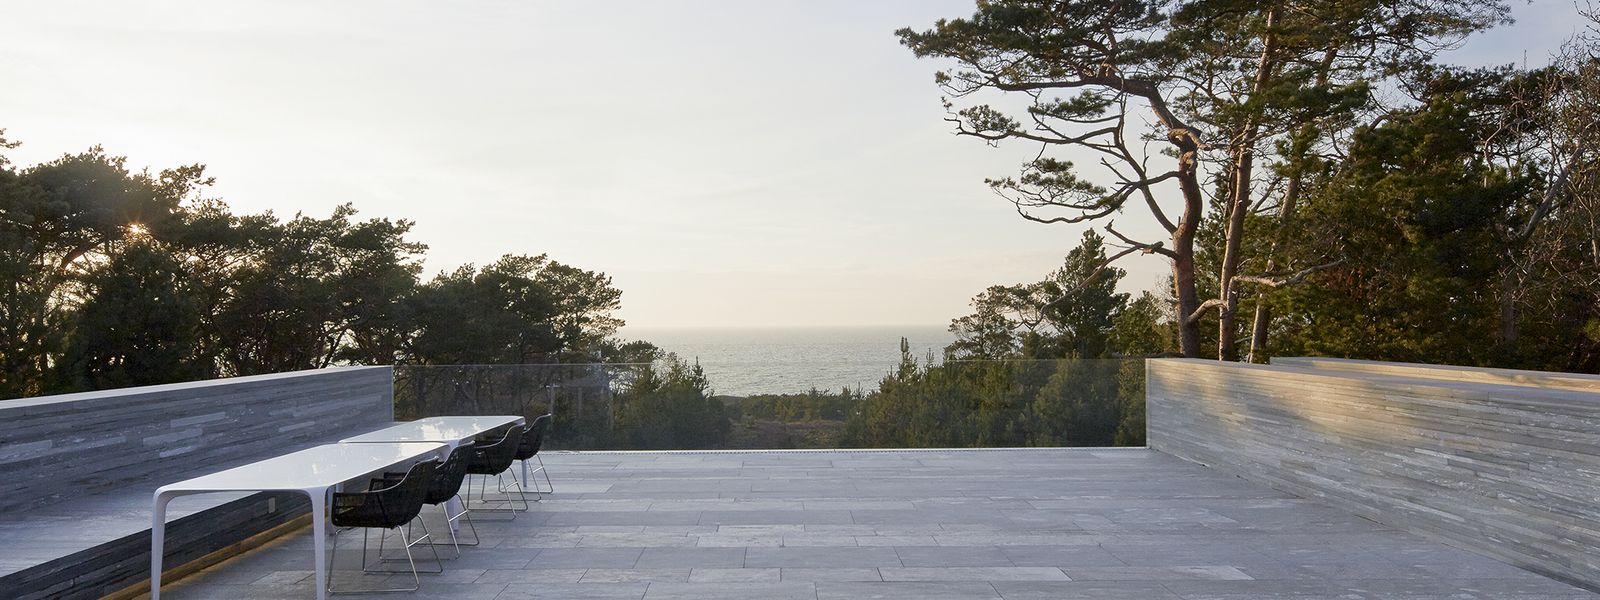 Ein Glaslaminat als Terrassenabschluss ermöglicht einen unverstellten Ausblick auf das Meer.